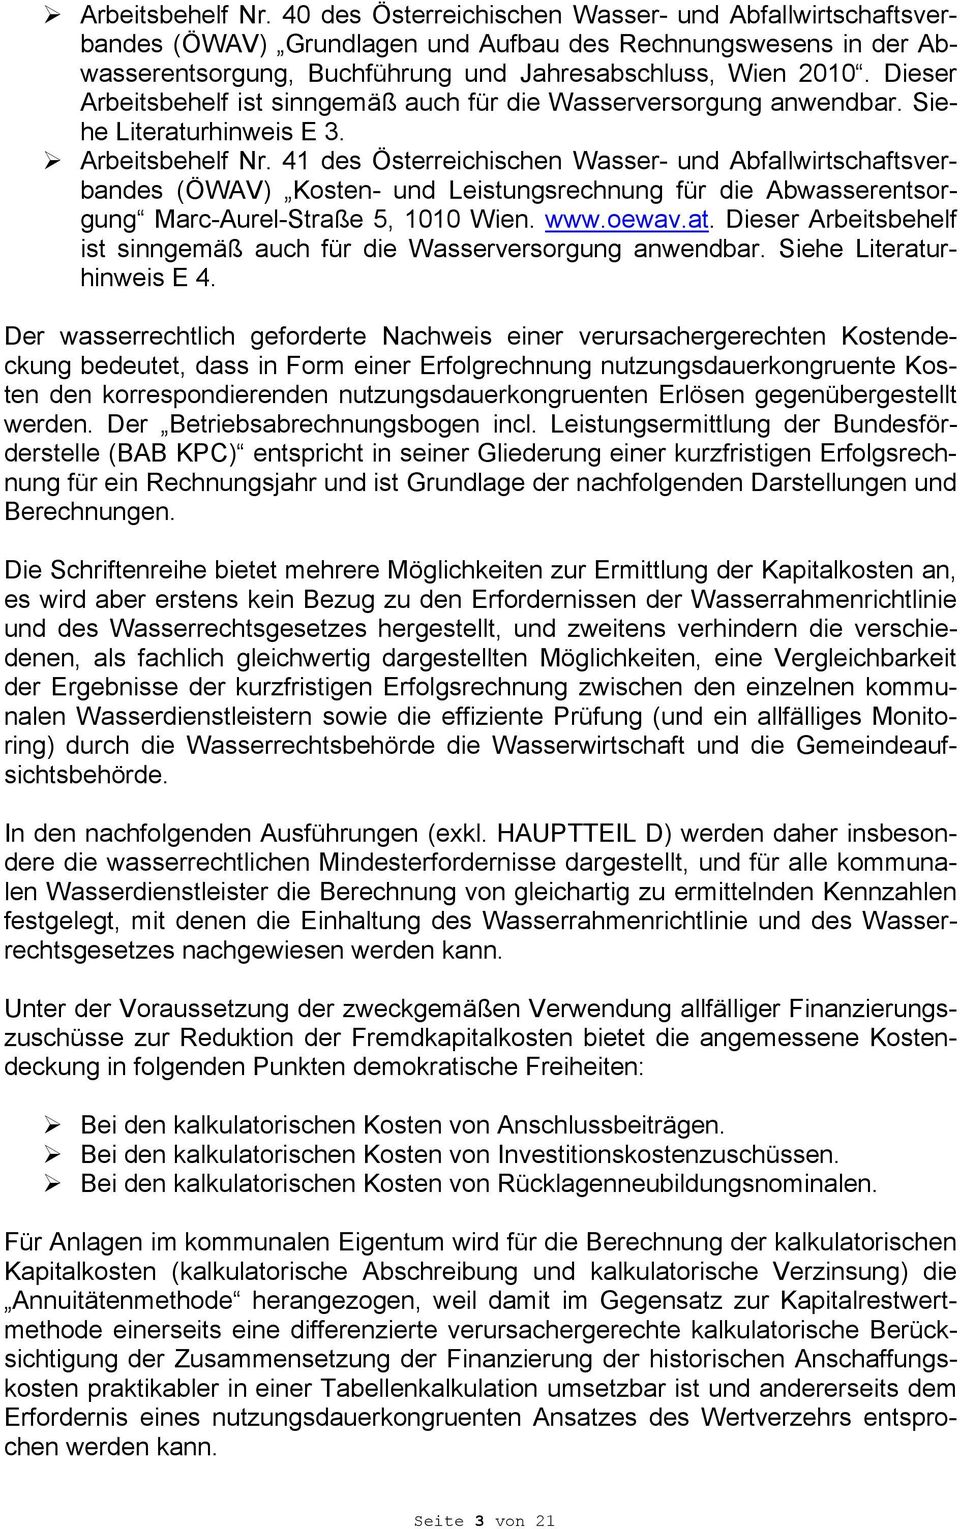 41 des Österreichischen Wasser- und Abfallwirtschaftsverbandes (ÖWAV) Kosten- und Leistungsrechnung für die Abwasserentsorgung Marc-Aurel-Straße 5, 1010 Wien. www.oewav.at.